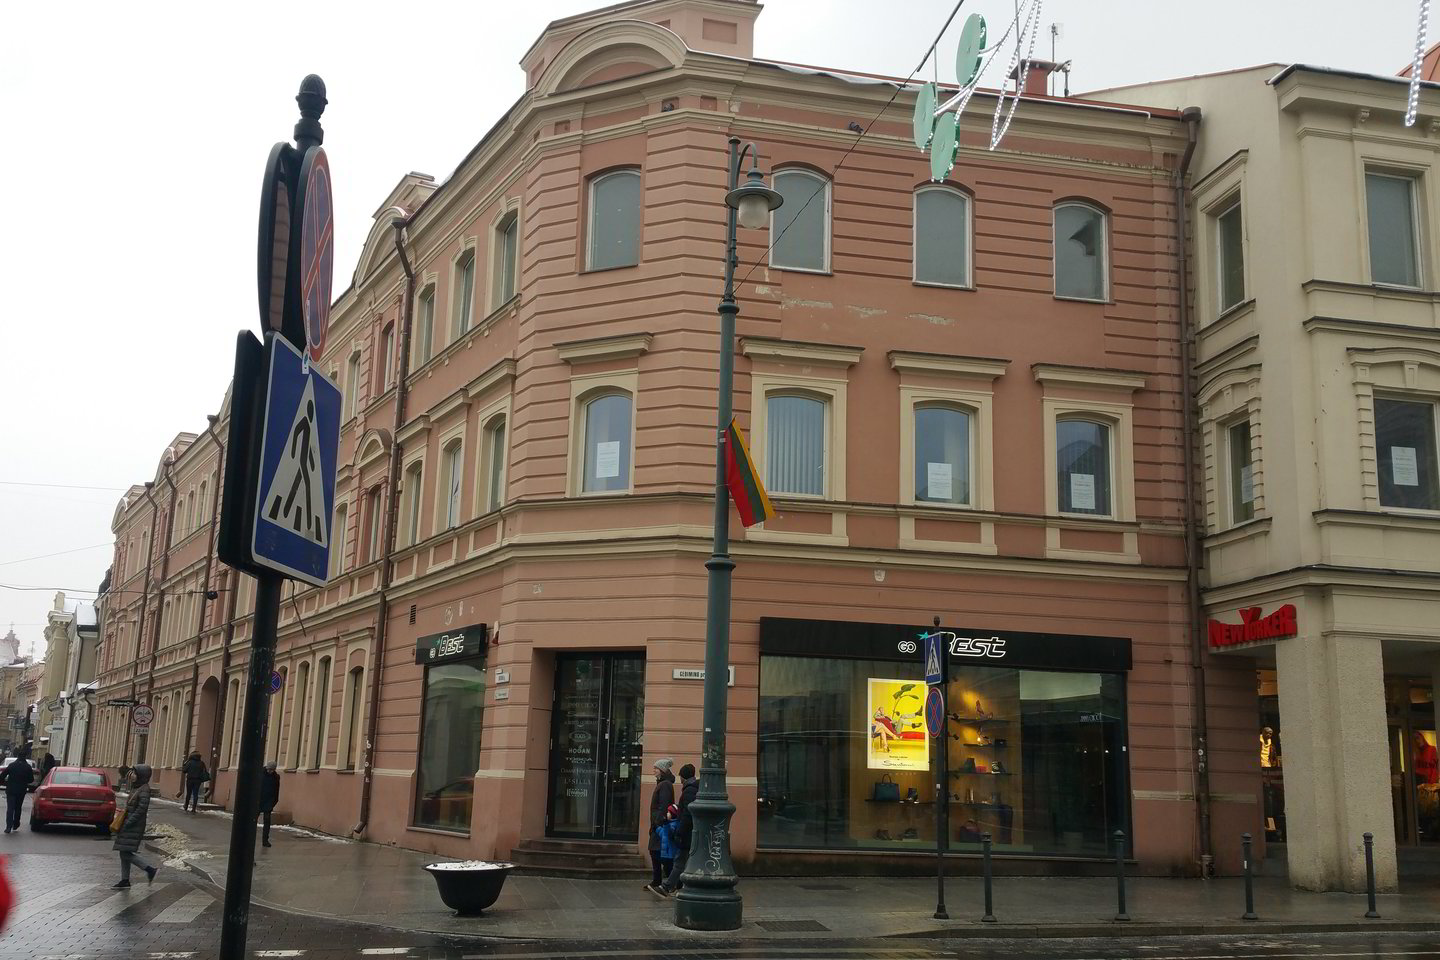  Šiame name Vilniuje Totorių gatvės ir Gedimino prospekto kampe trečiame aukšte veikė A.Jarušaičio fotoateljė, kur 1917 rugsėjo 25-ąją susirinko būsimi signatarai bendrai nuotraukai.